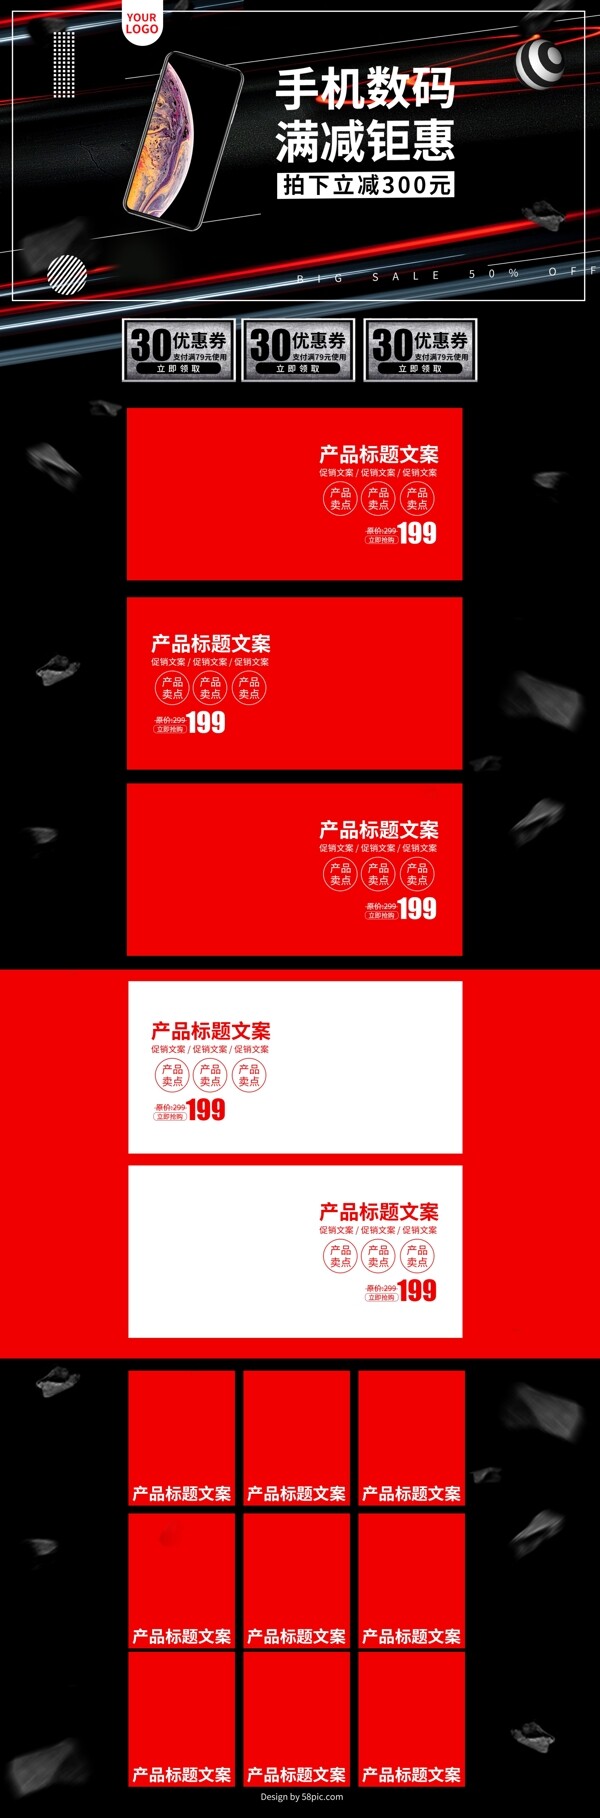 红黑炫酷简约手机数码首页促销淘宝装修模板